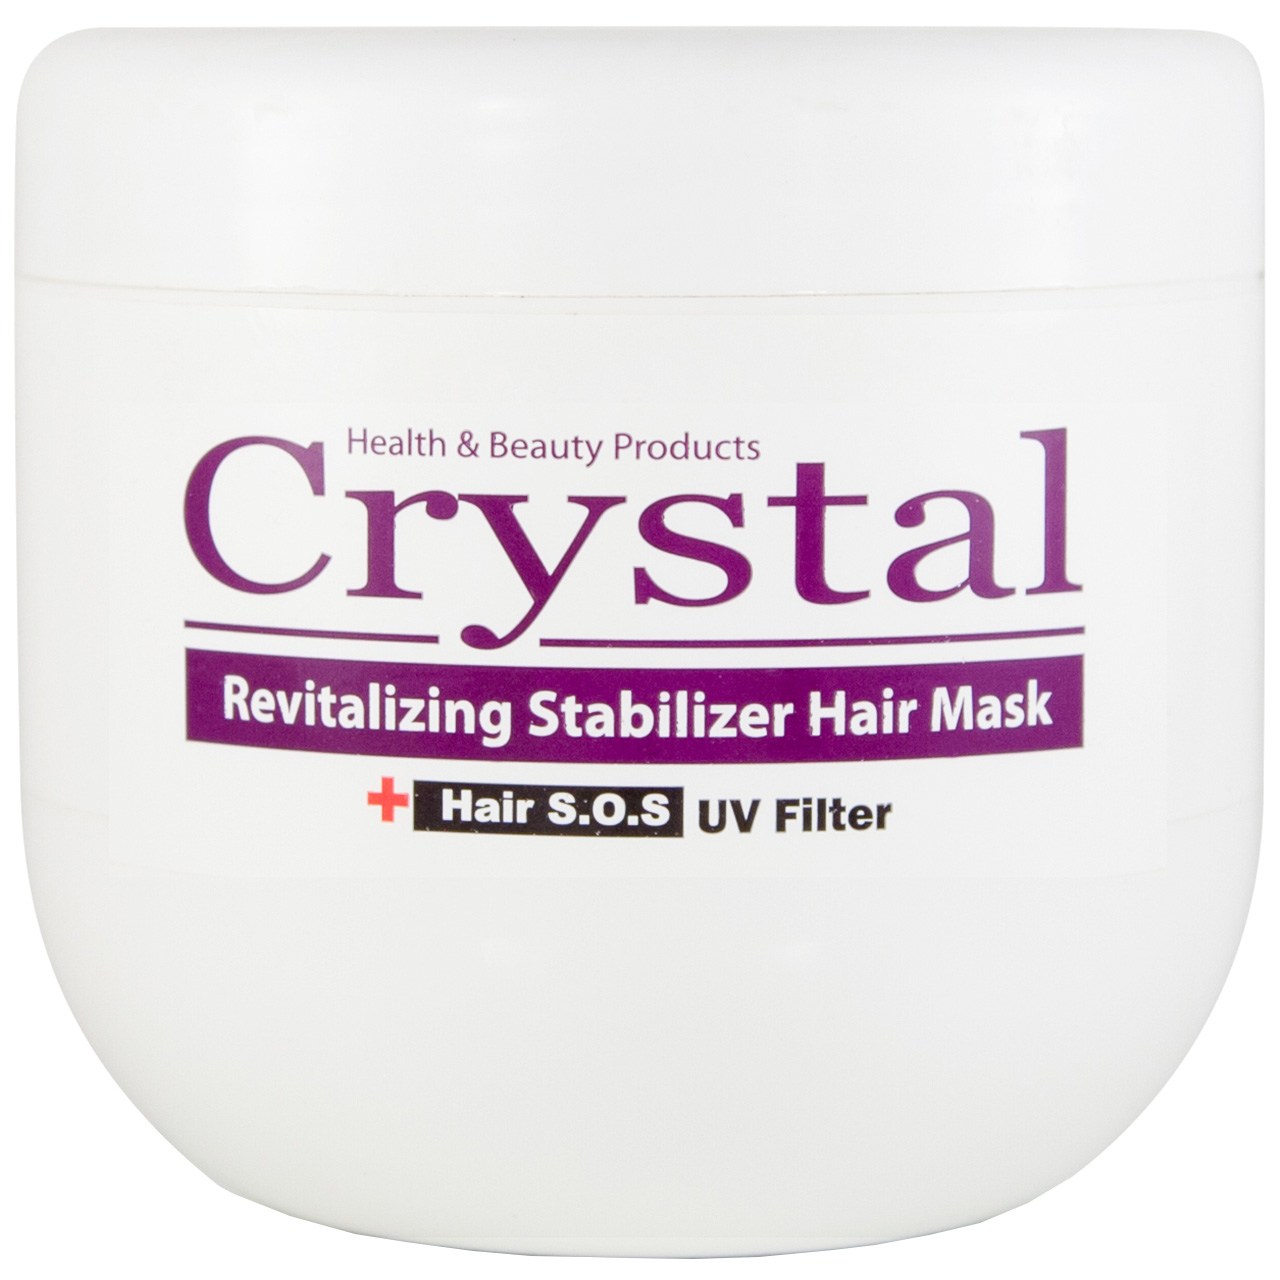 ماسک تغذیه کننده مو کاسه ای کریستال مدل Revitalizing Stabilizer حجم 500 میلی لیتر